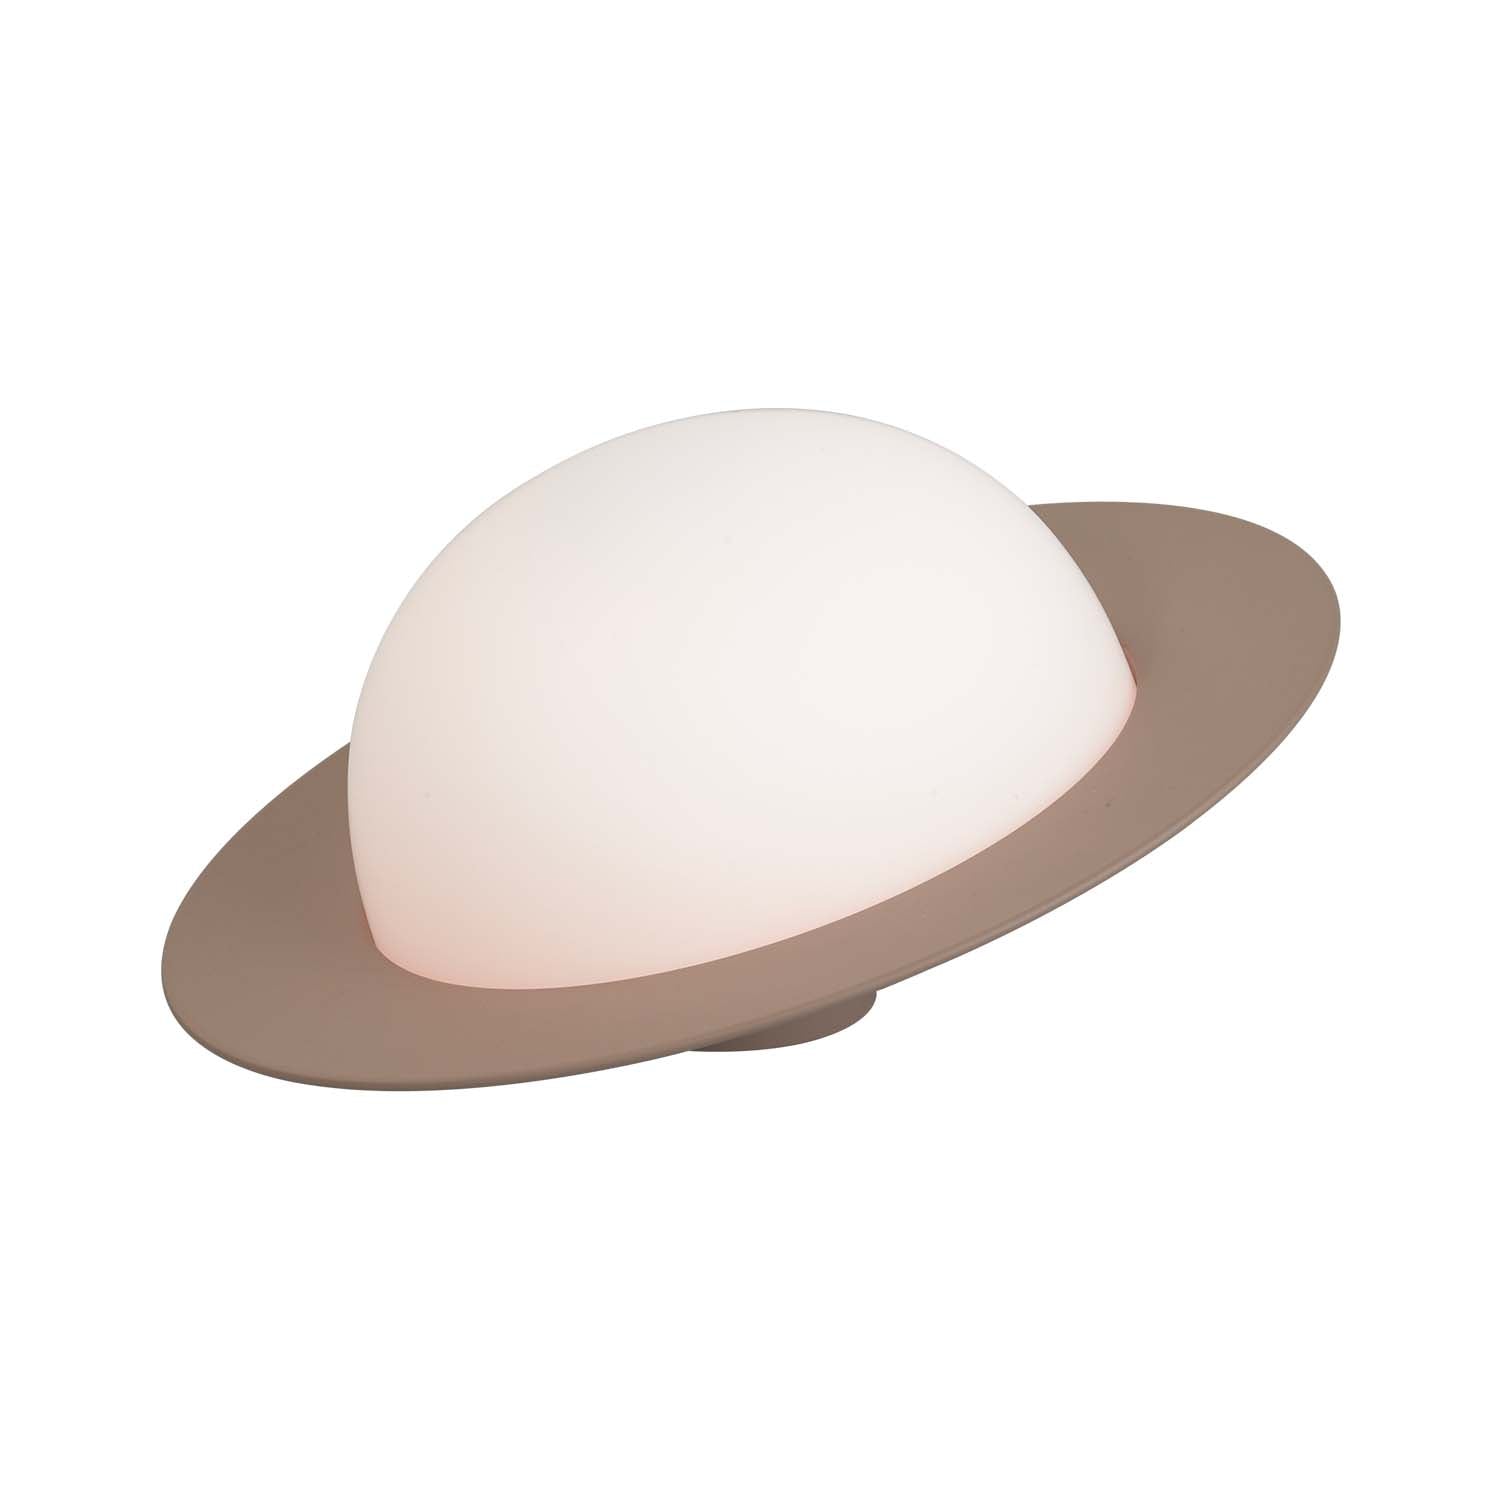 ALLEY – Design und farbenfrohe Tischlampe in Saturnform